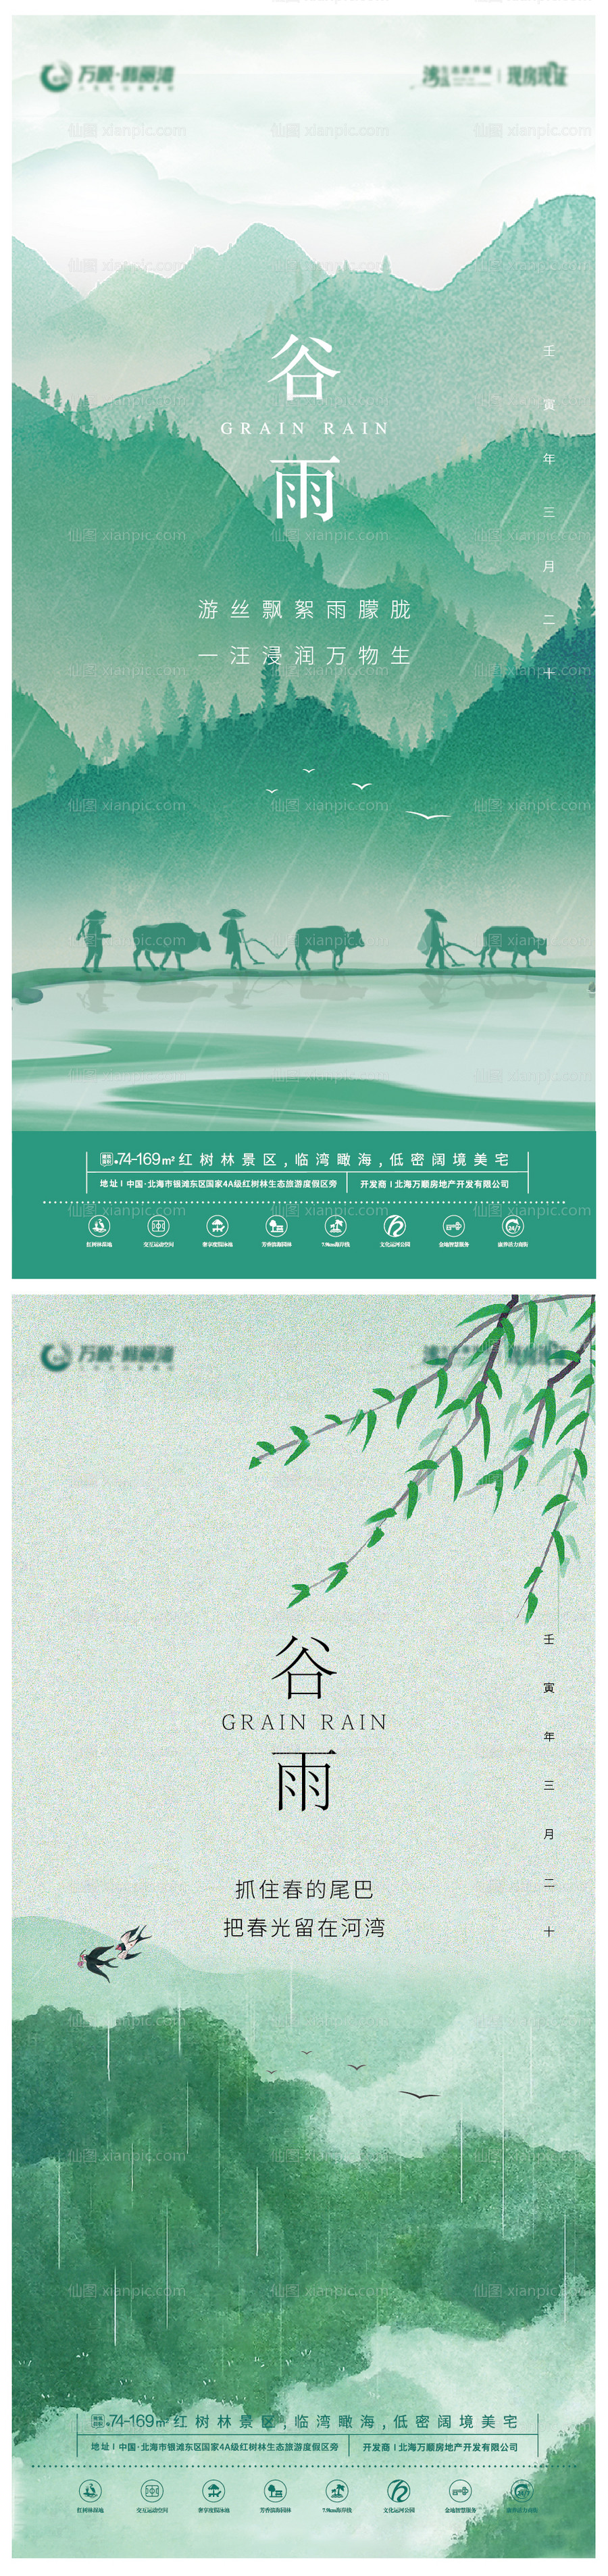 素材乐-谷雨节气系列海报